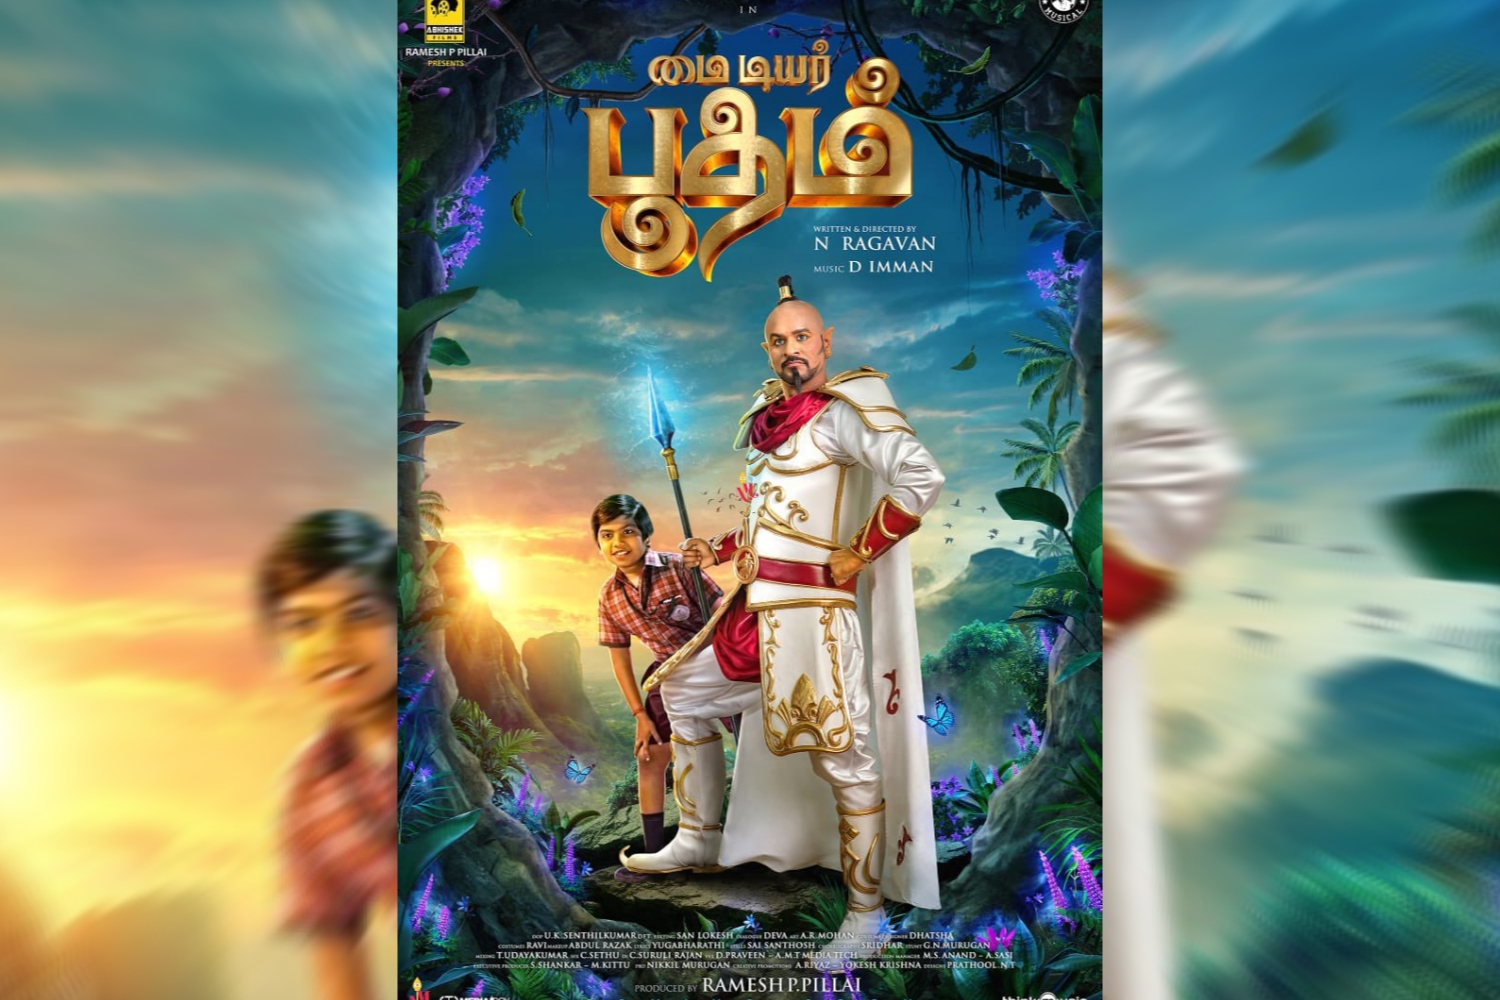 Prabhu Deva and Ashwanth in film poster